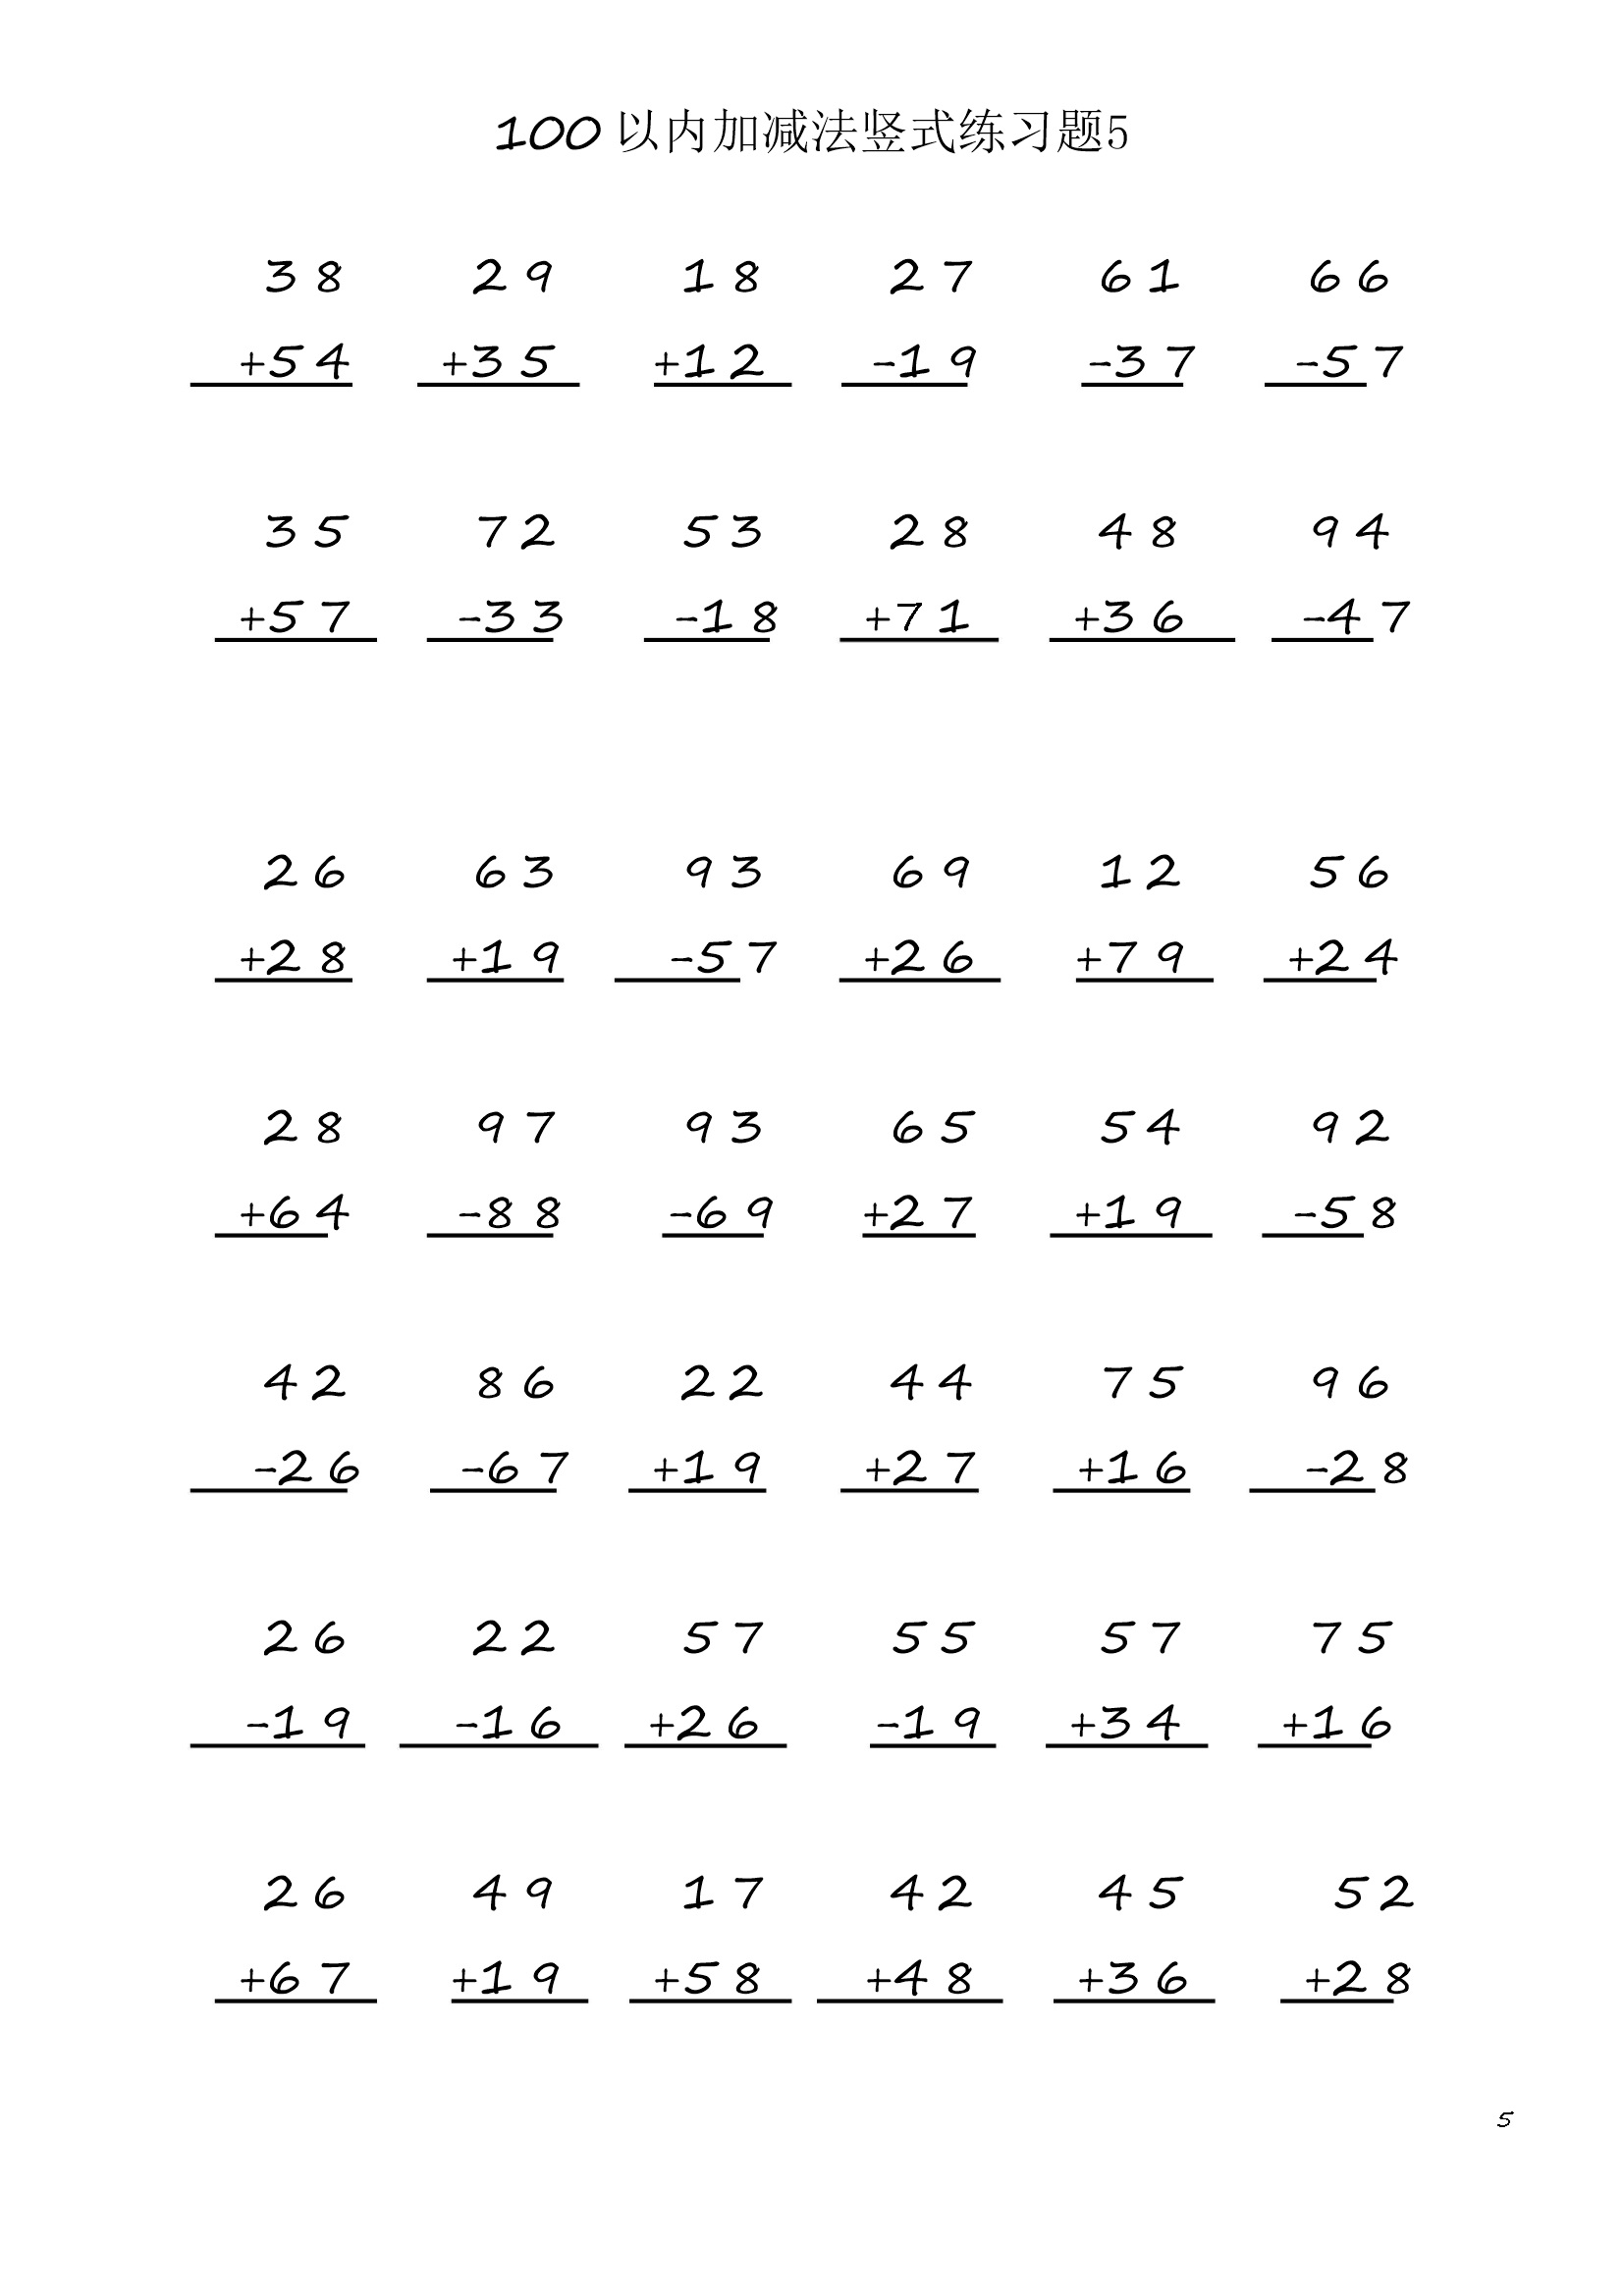 小学数学二年级上册100 以内加减法竖式练习题5  (1页42题)